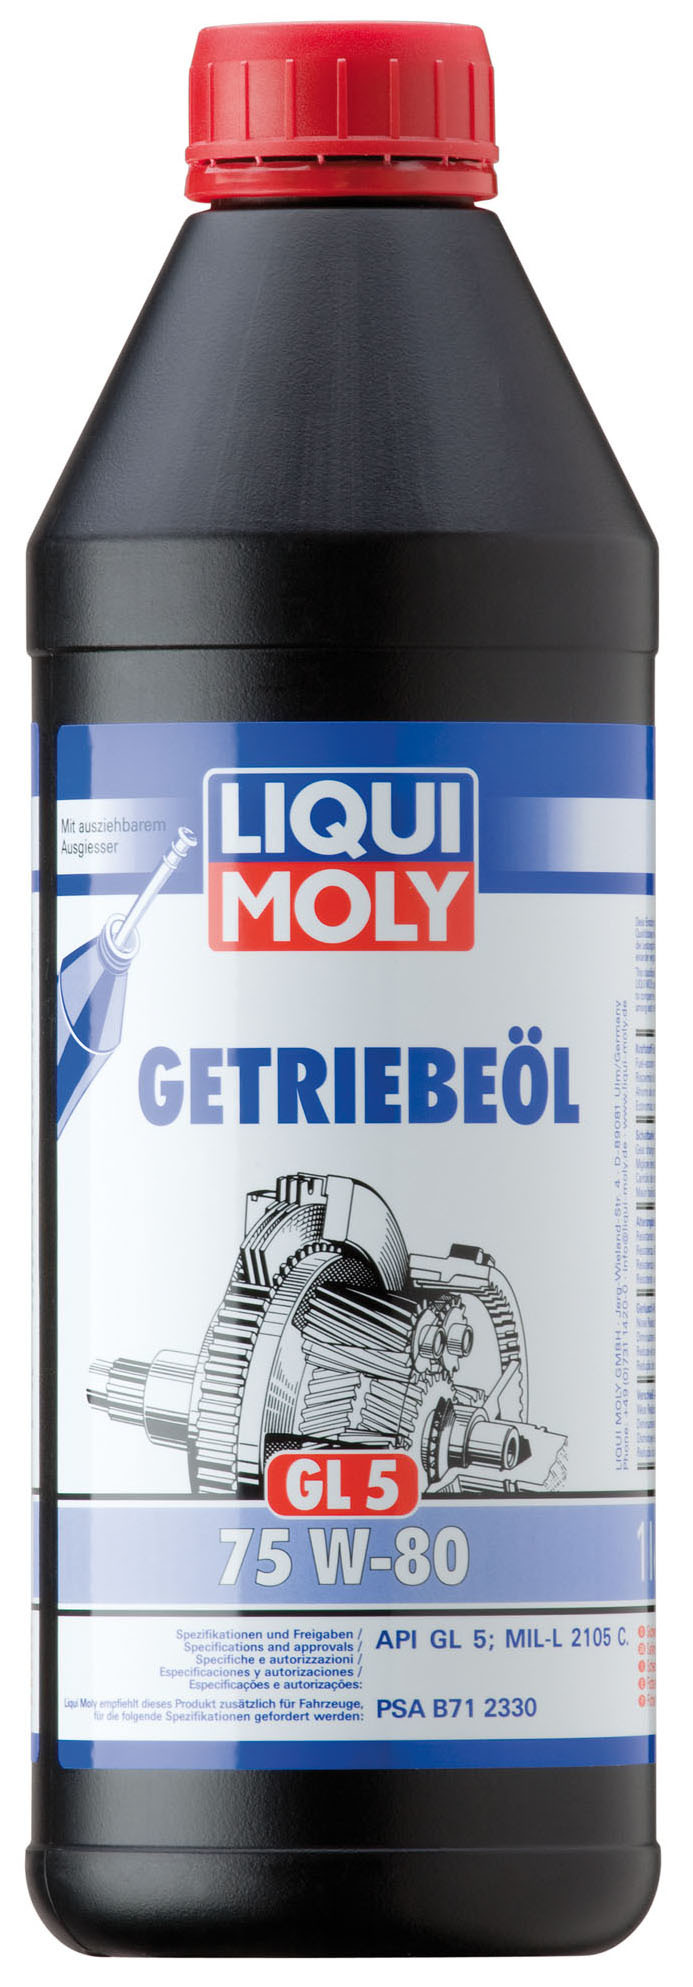 Масло трансмиссионное Liqui Moly Getriebeoil 75W80 (GL 5) полусинтетическое 1л